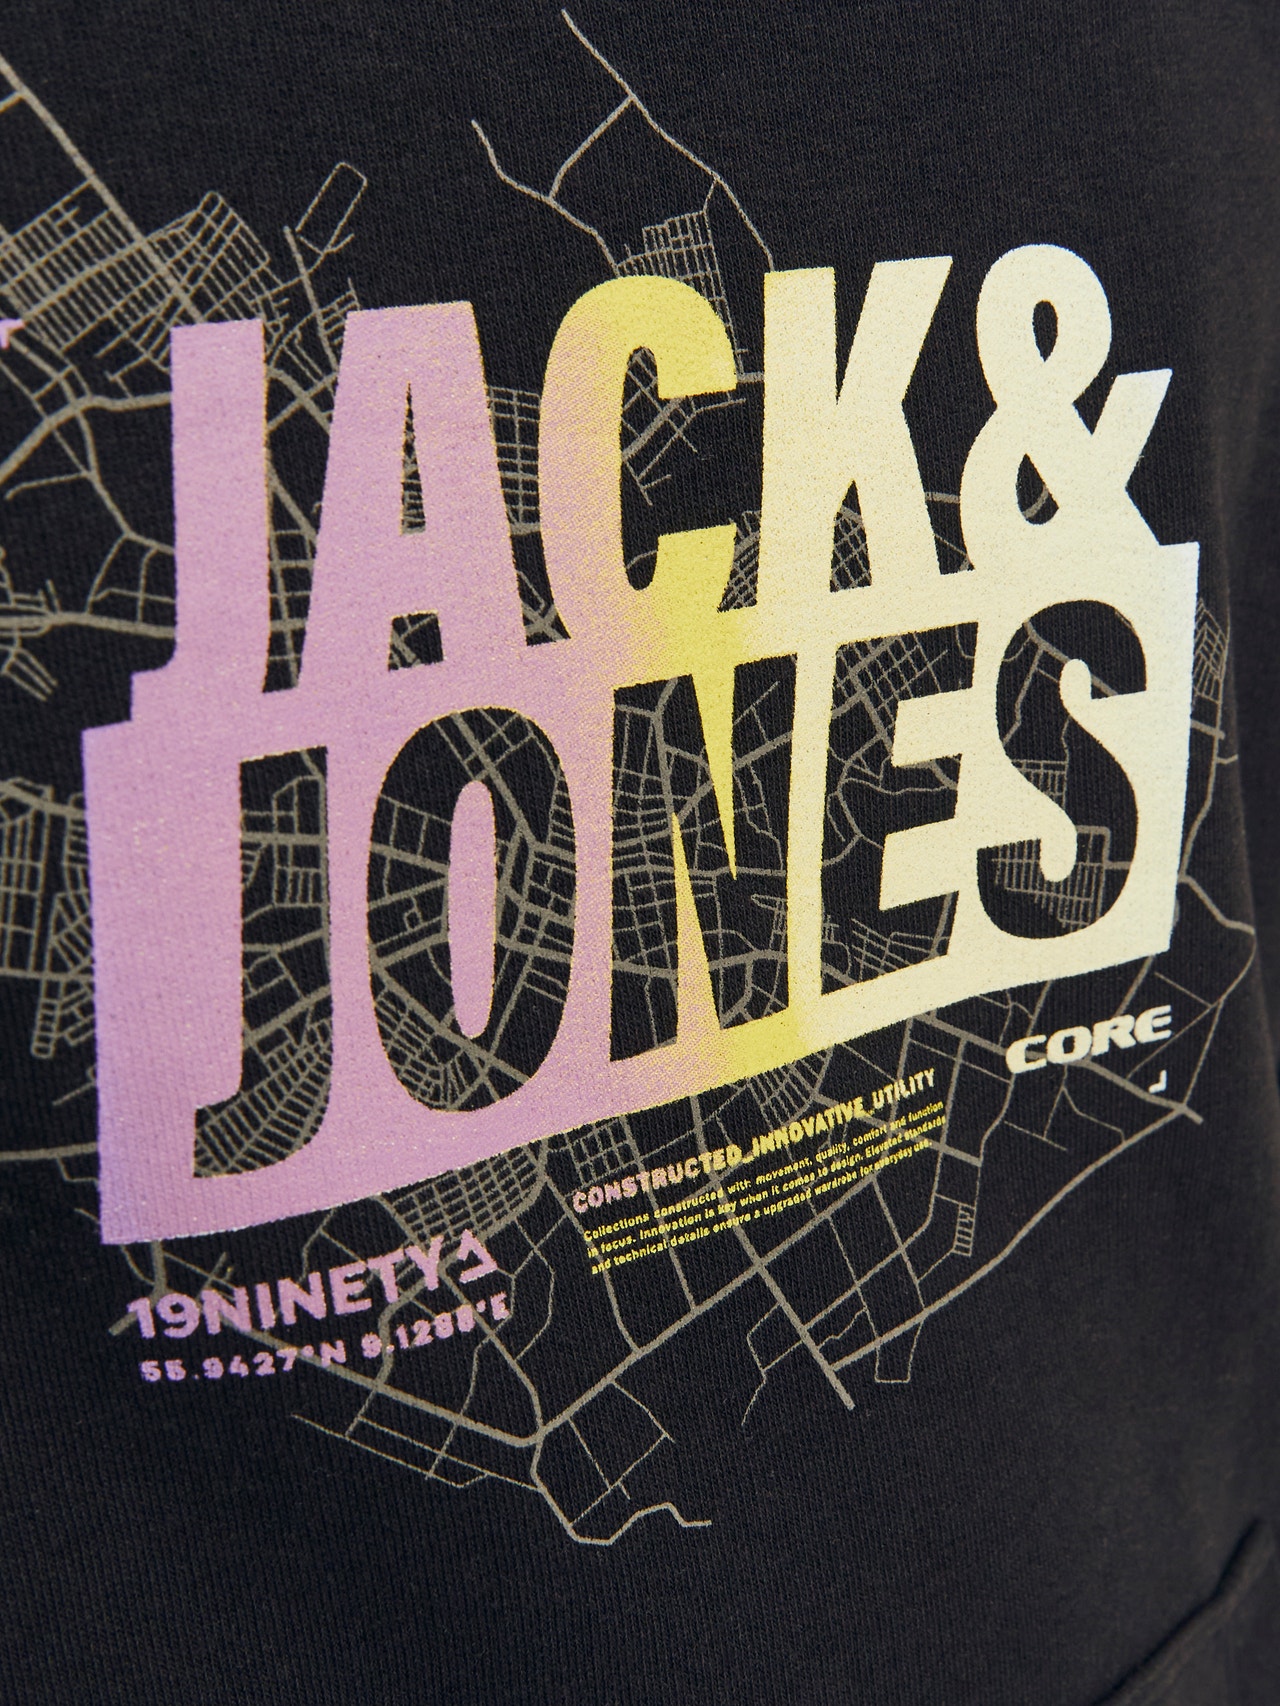 Jack & Jones Tryck Huvtröje För pojkar -Black - 12253990